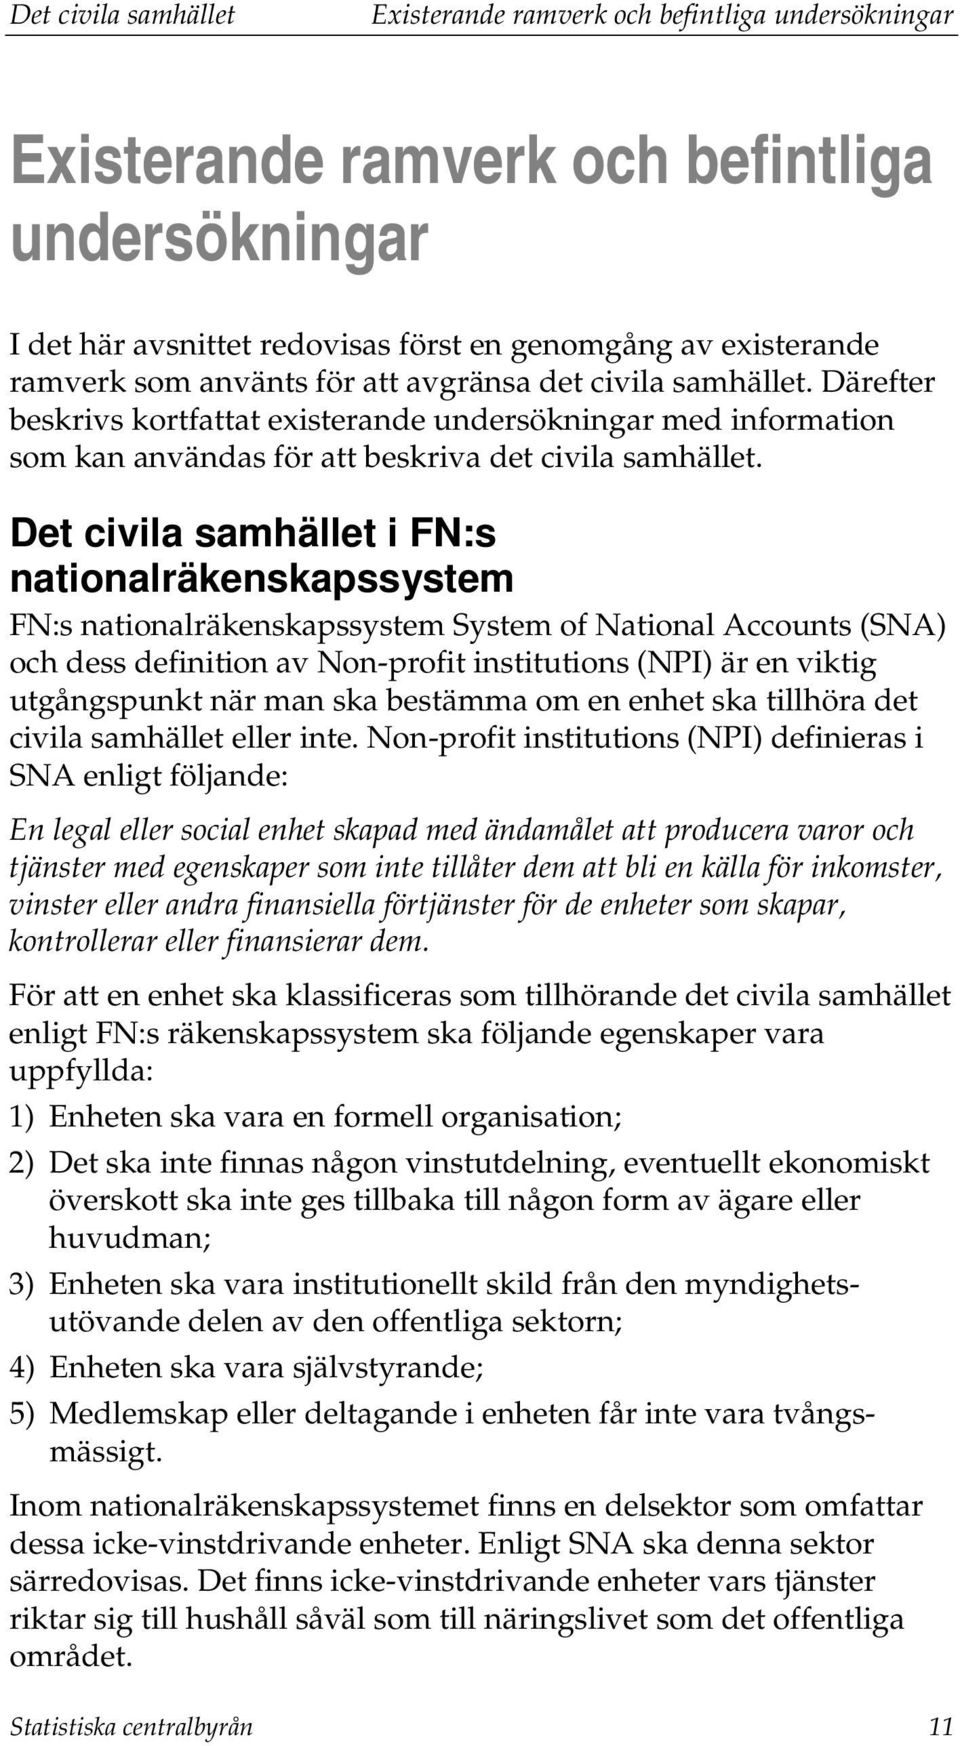 Det civila samhället i FN:s nationalräkenskapssystem FN:s nationalräkenskapssystem System of National Accounts (SNA) och dess definition av Non-profit institutions (NPI) är en viktig utgångspunkt när